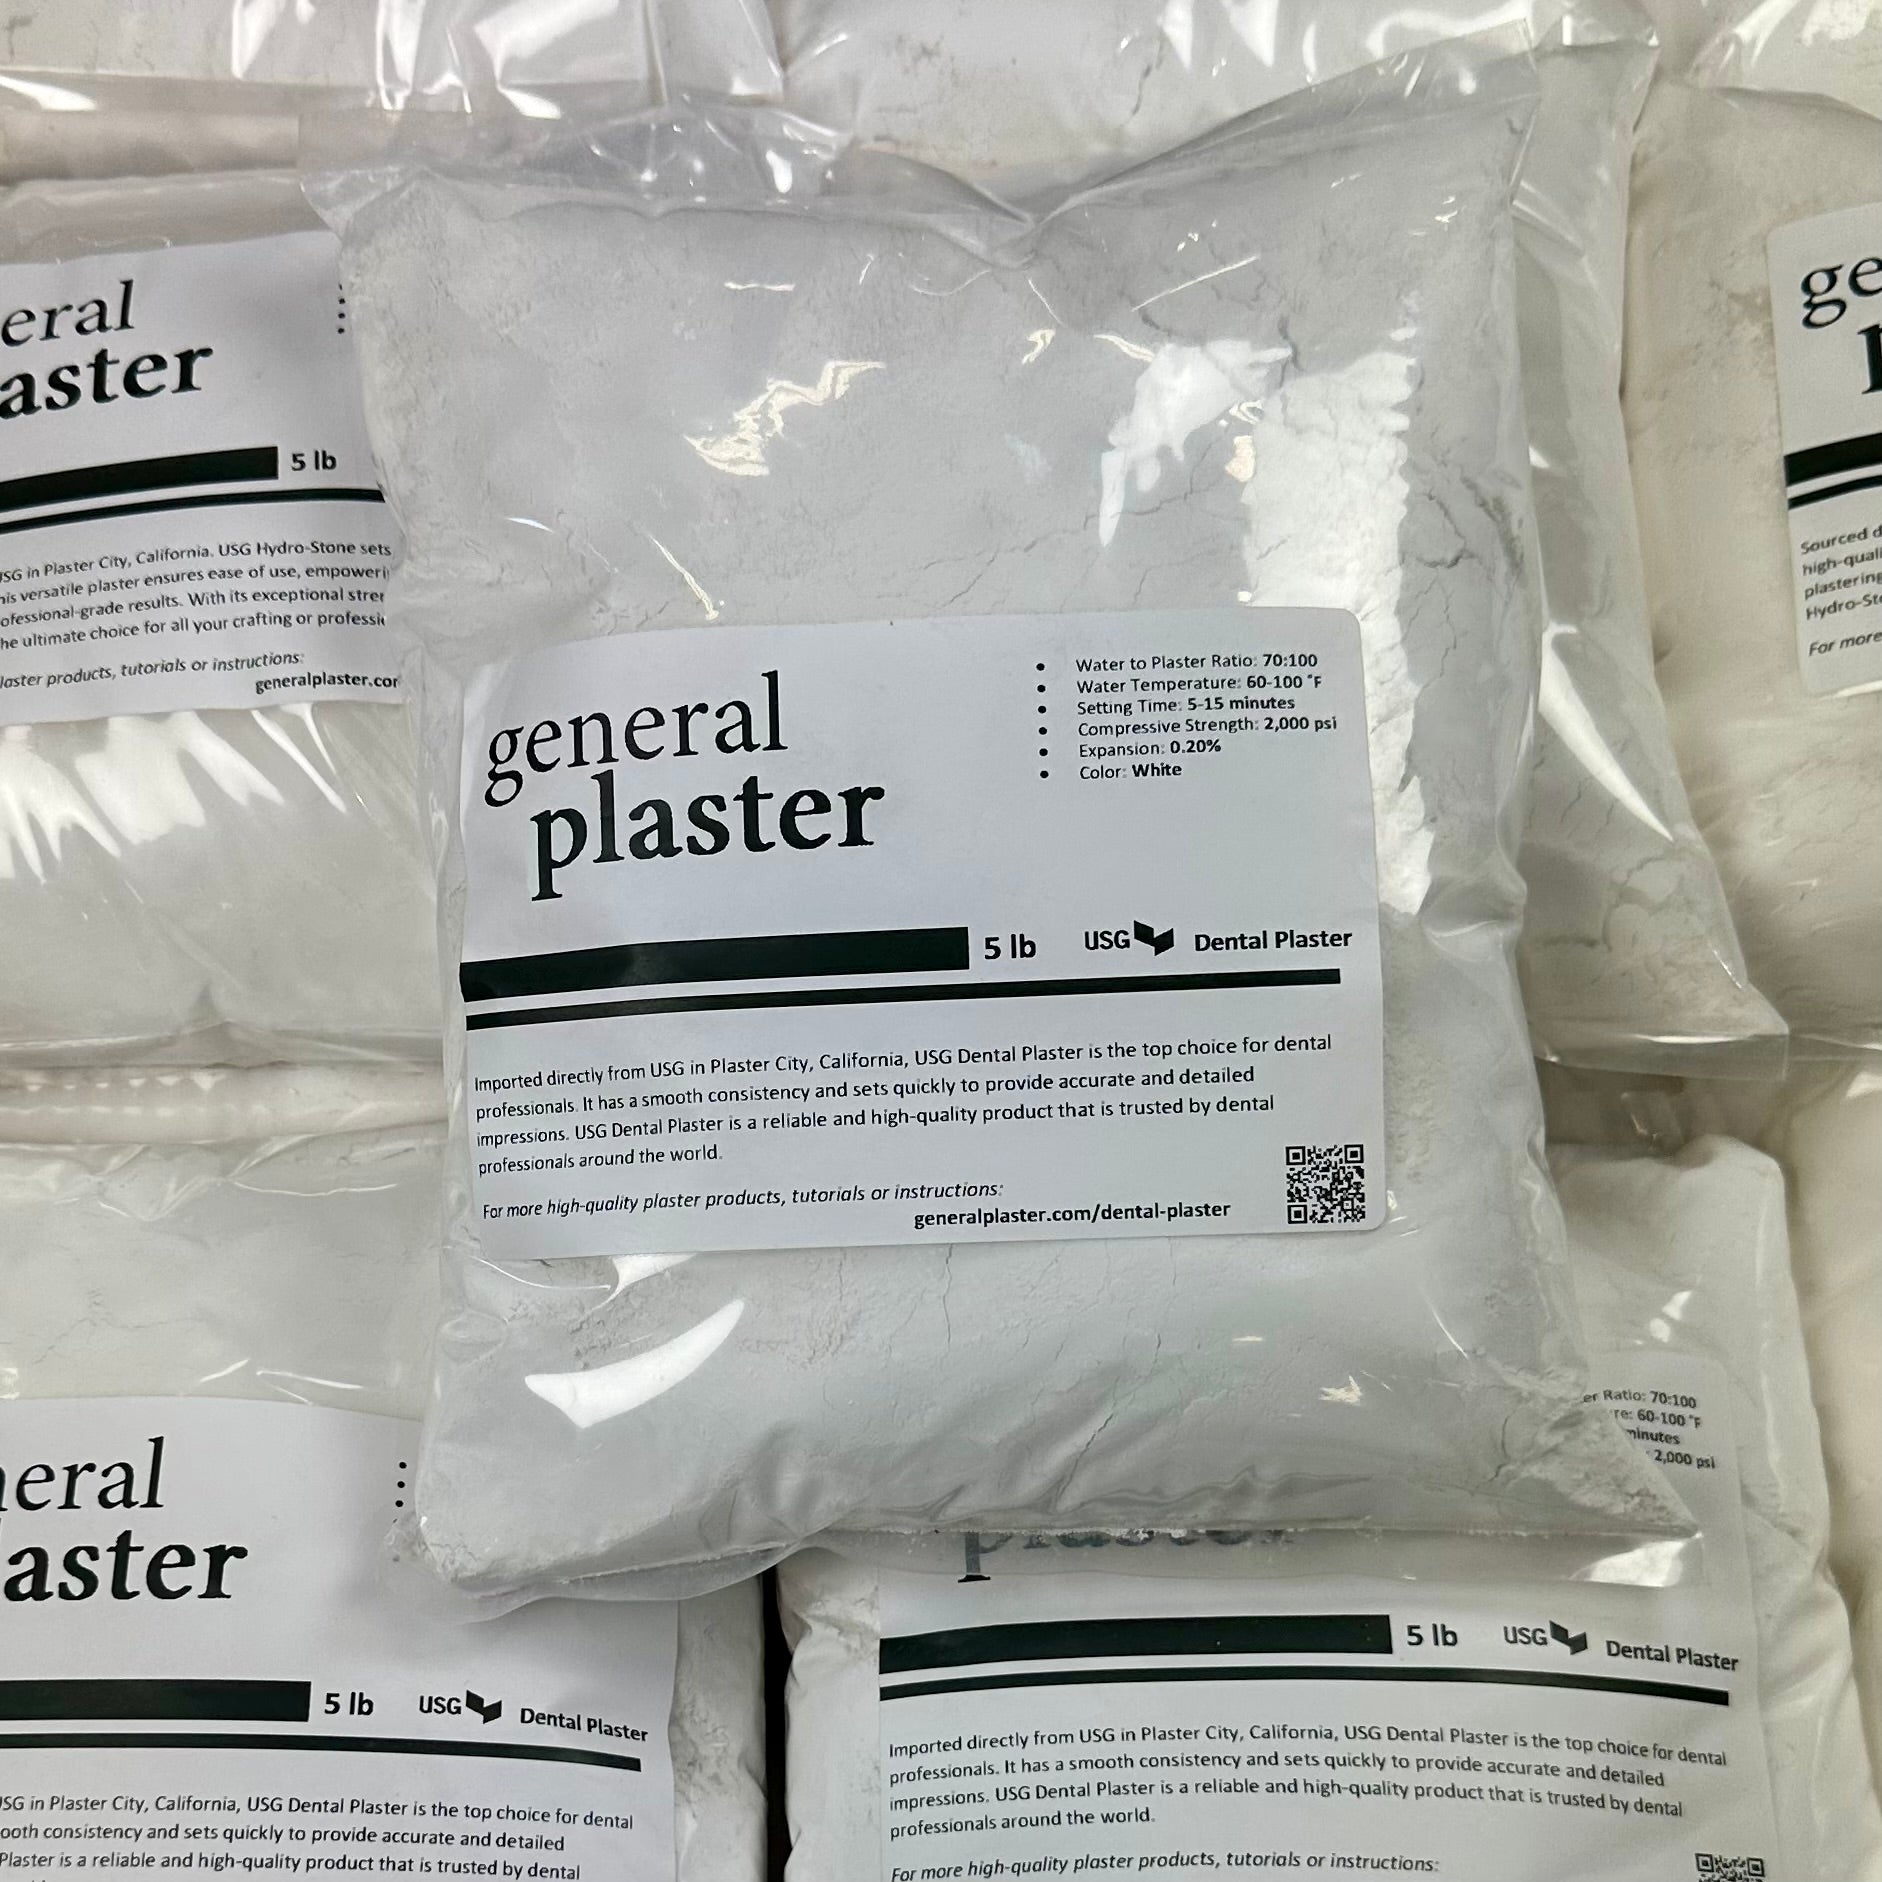 Sealed 5 lb bag of USG Dental Plaster from GP on a stack